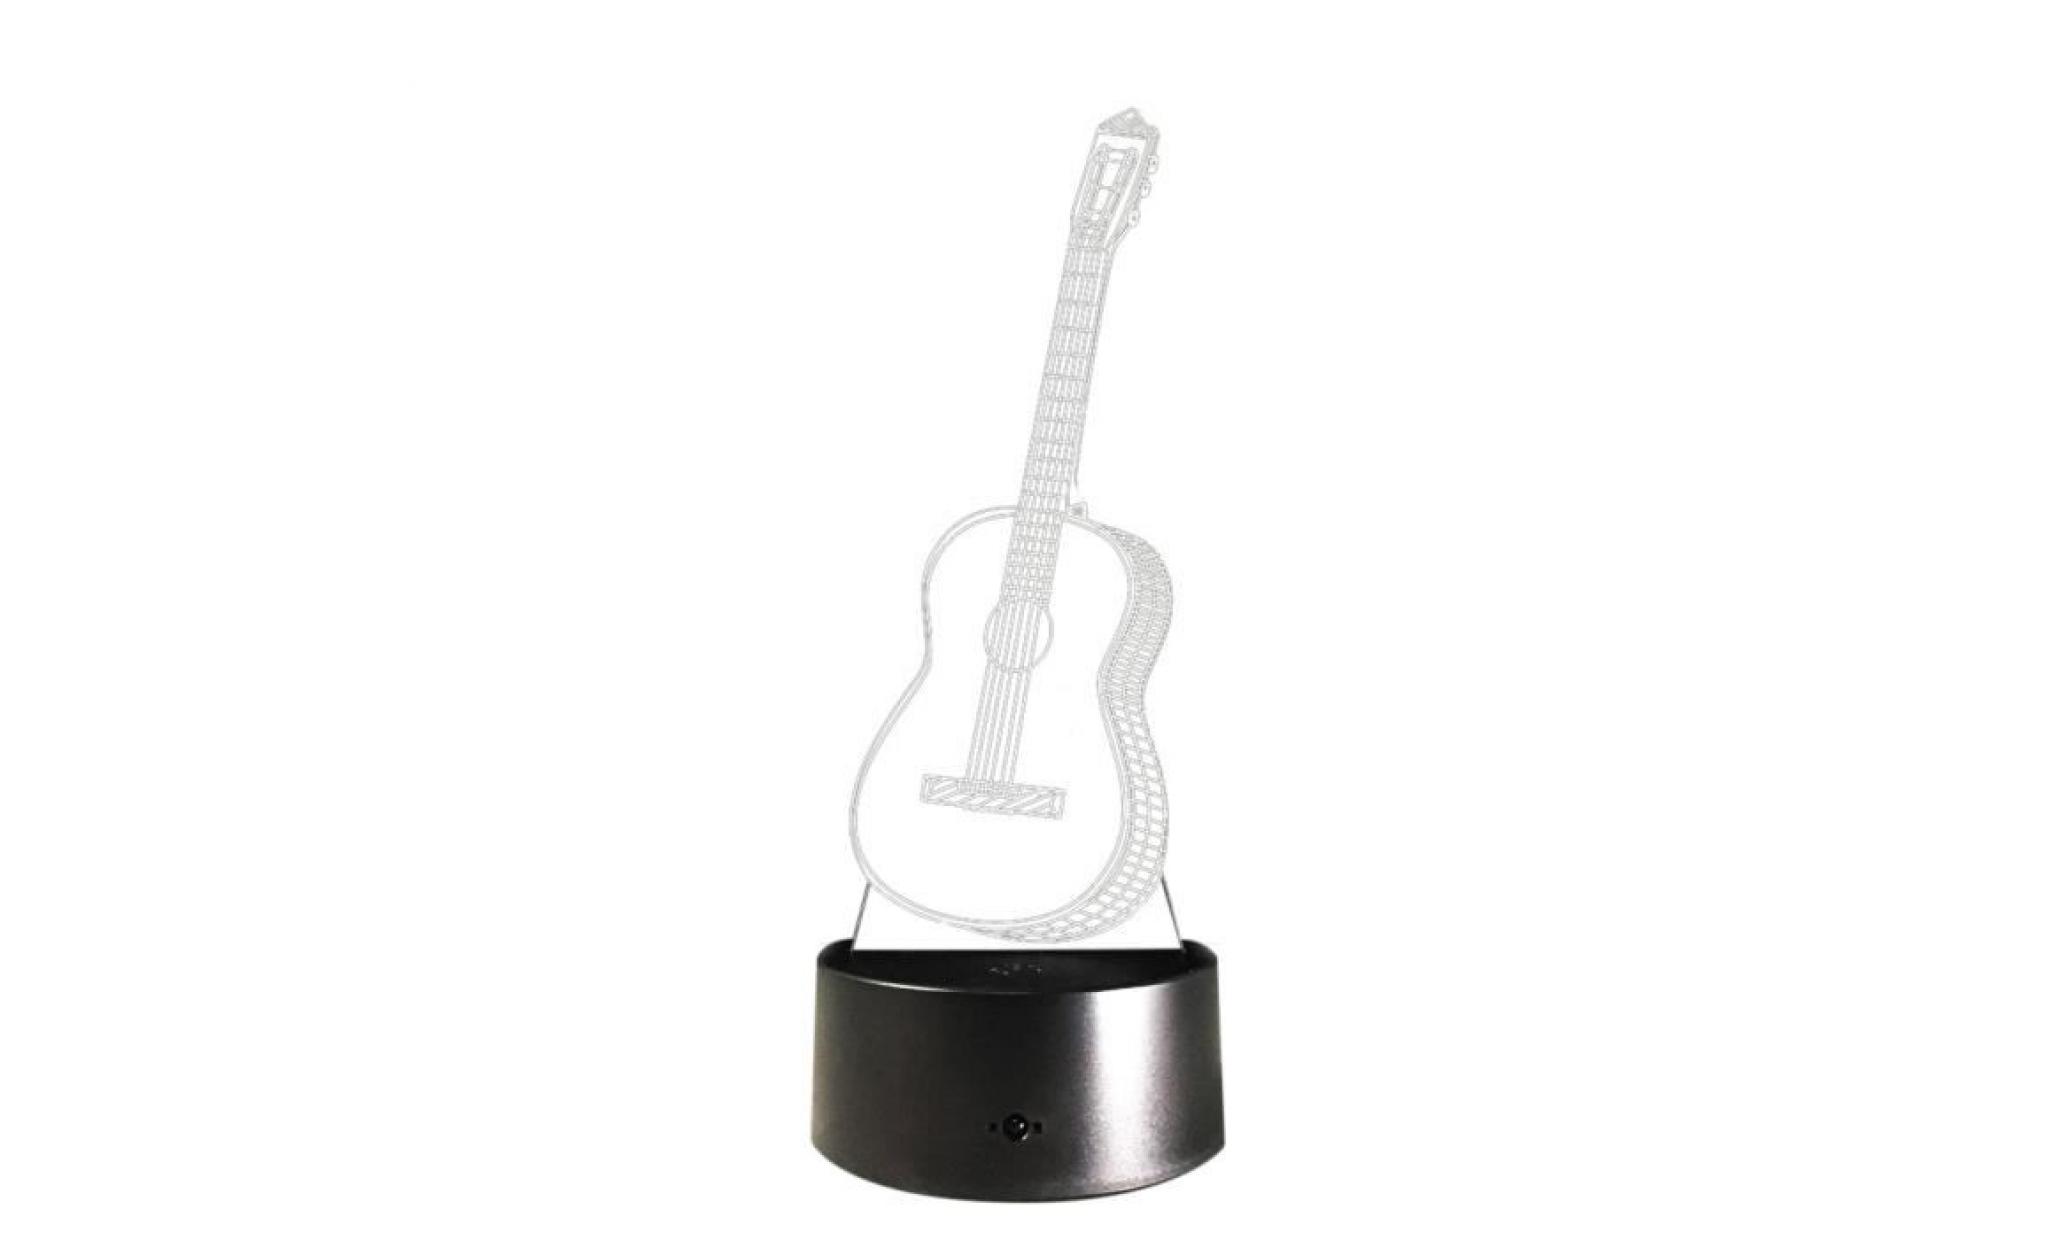 led guitar ukulele 3d night light 7 couleurs table lampe de bureau à touche cadeau de noël zsd481